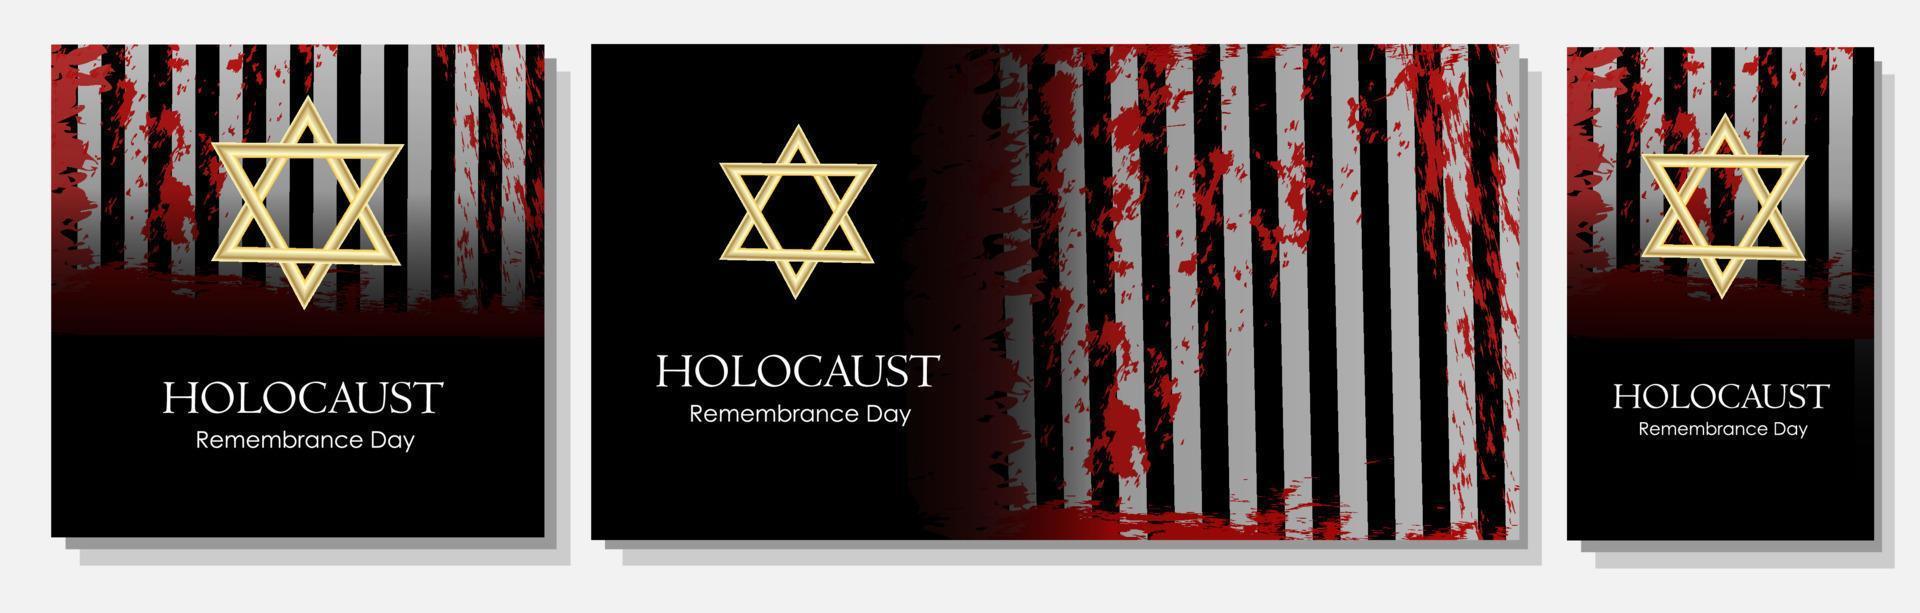 holocausto. cartel para el día del recuerdo de los muertos en el holocausto. agresión fascista contra los judíos. vector